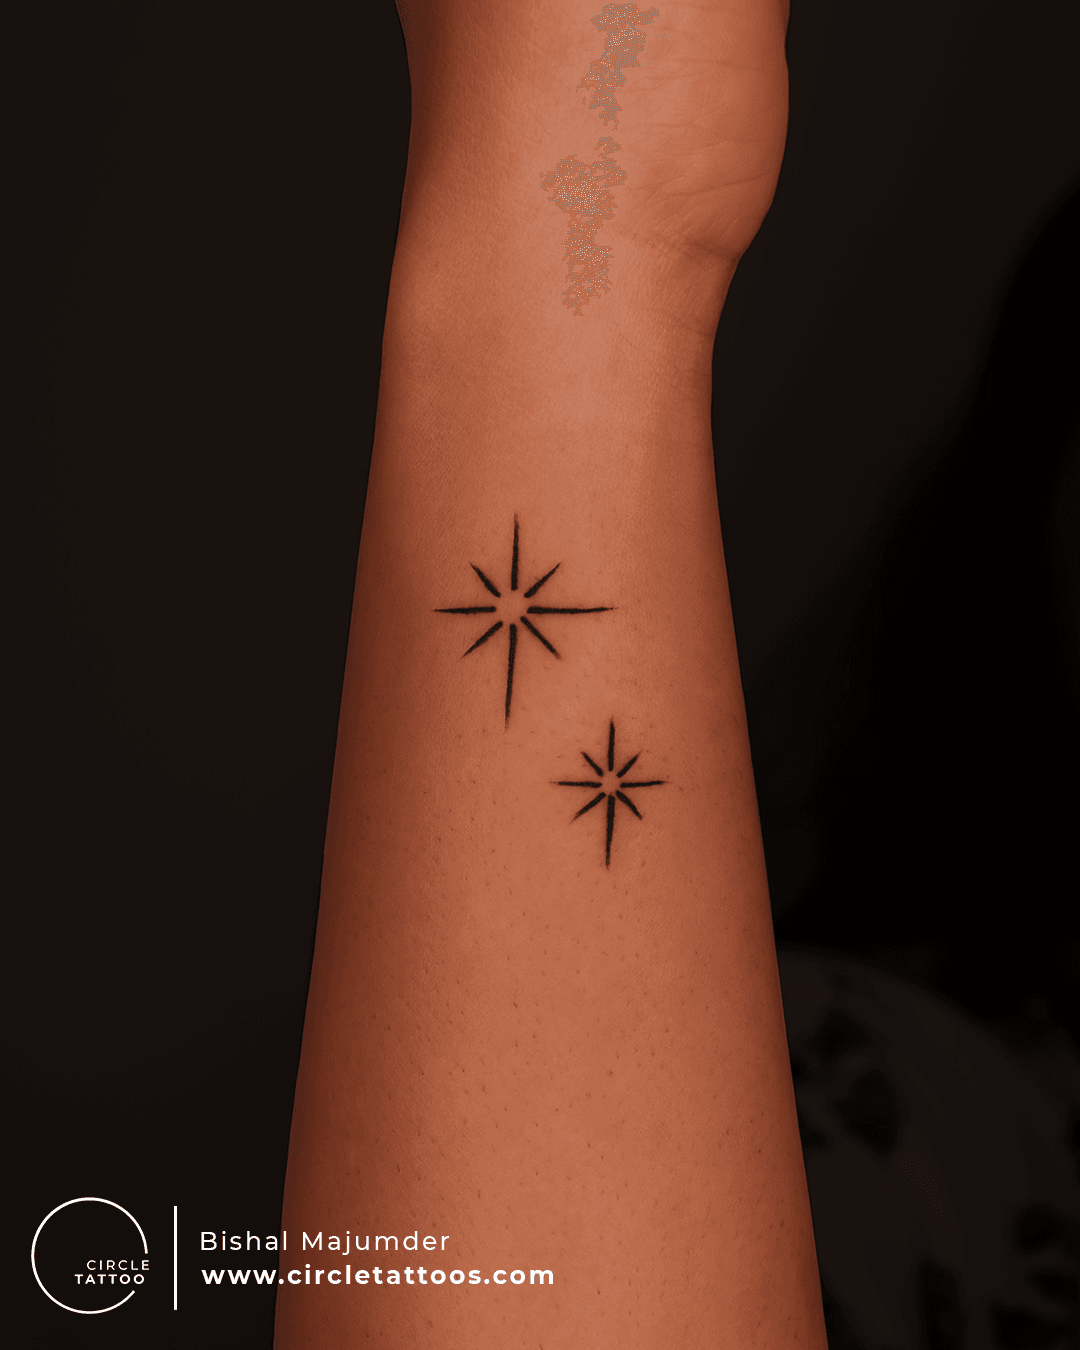 Changing a star tattoo? : r/TattooDesigns